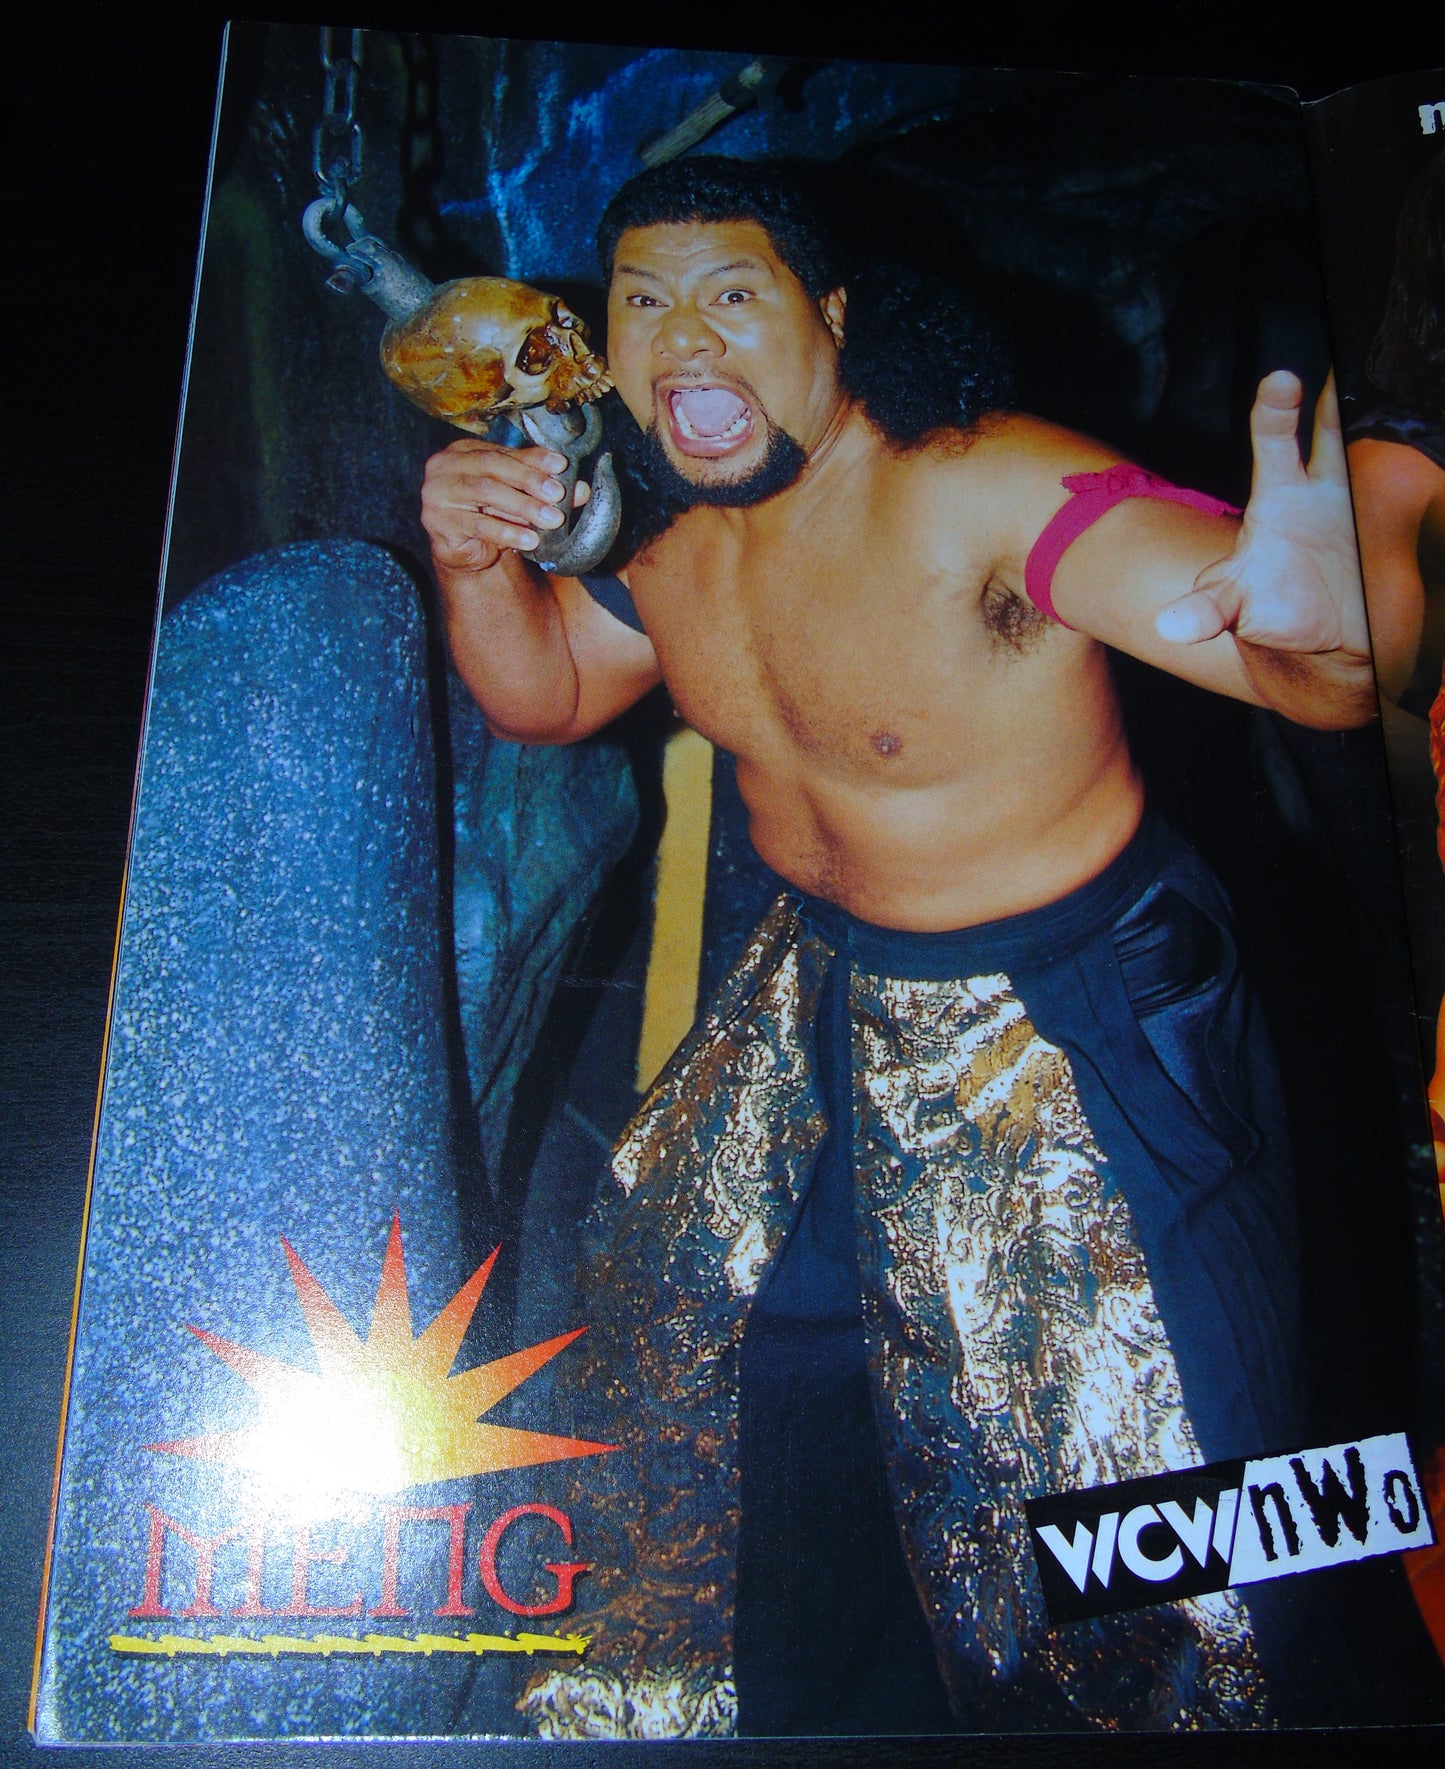 WCW/nWo Magazine April 1999 Issue 49